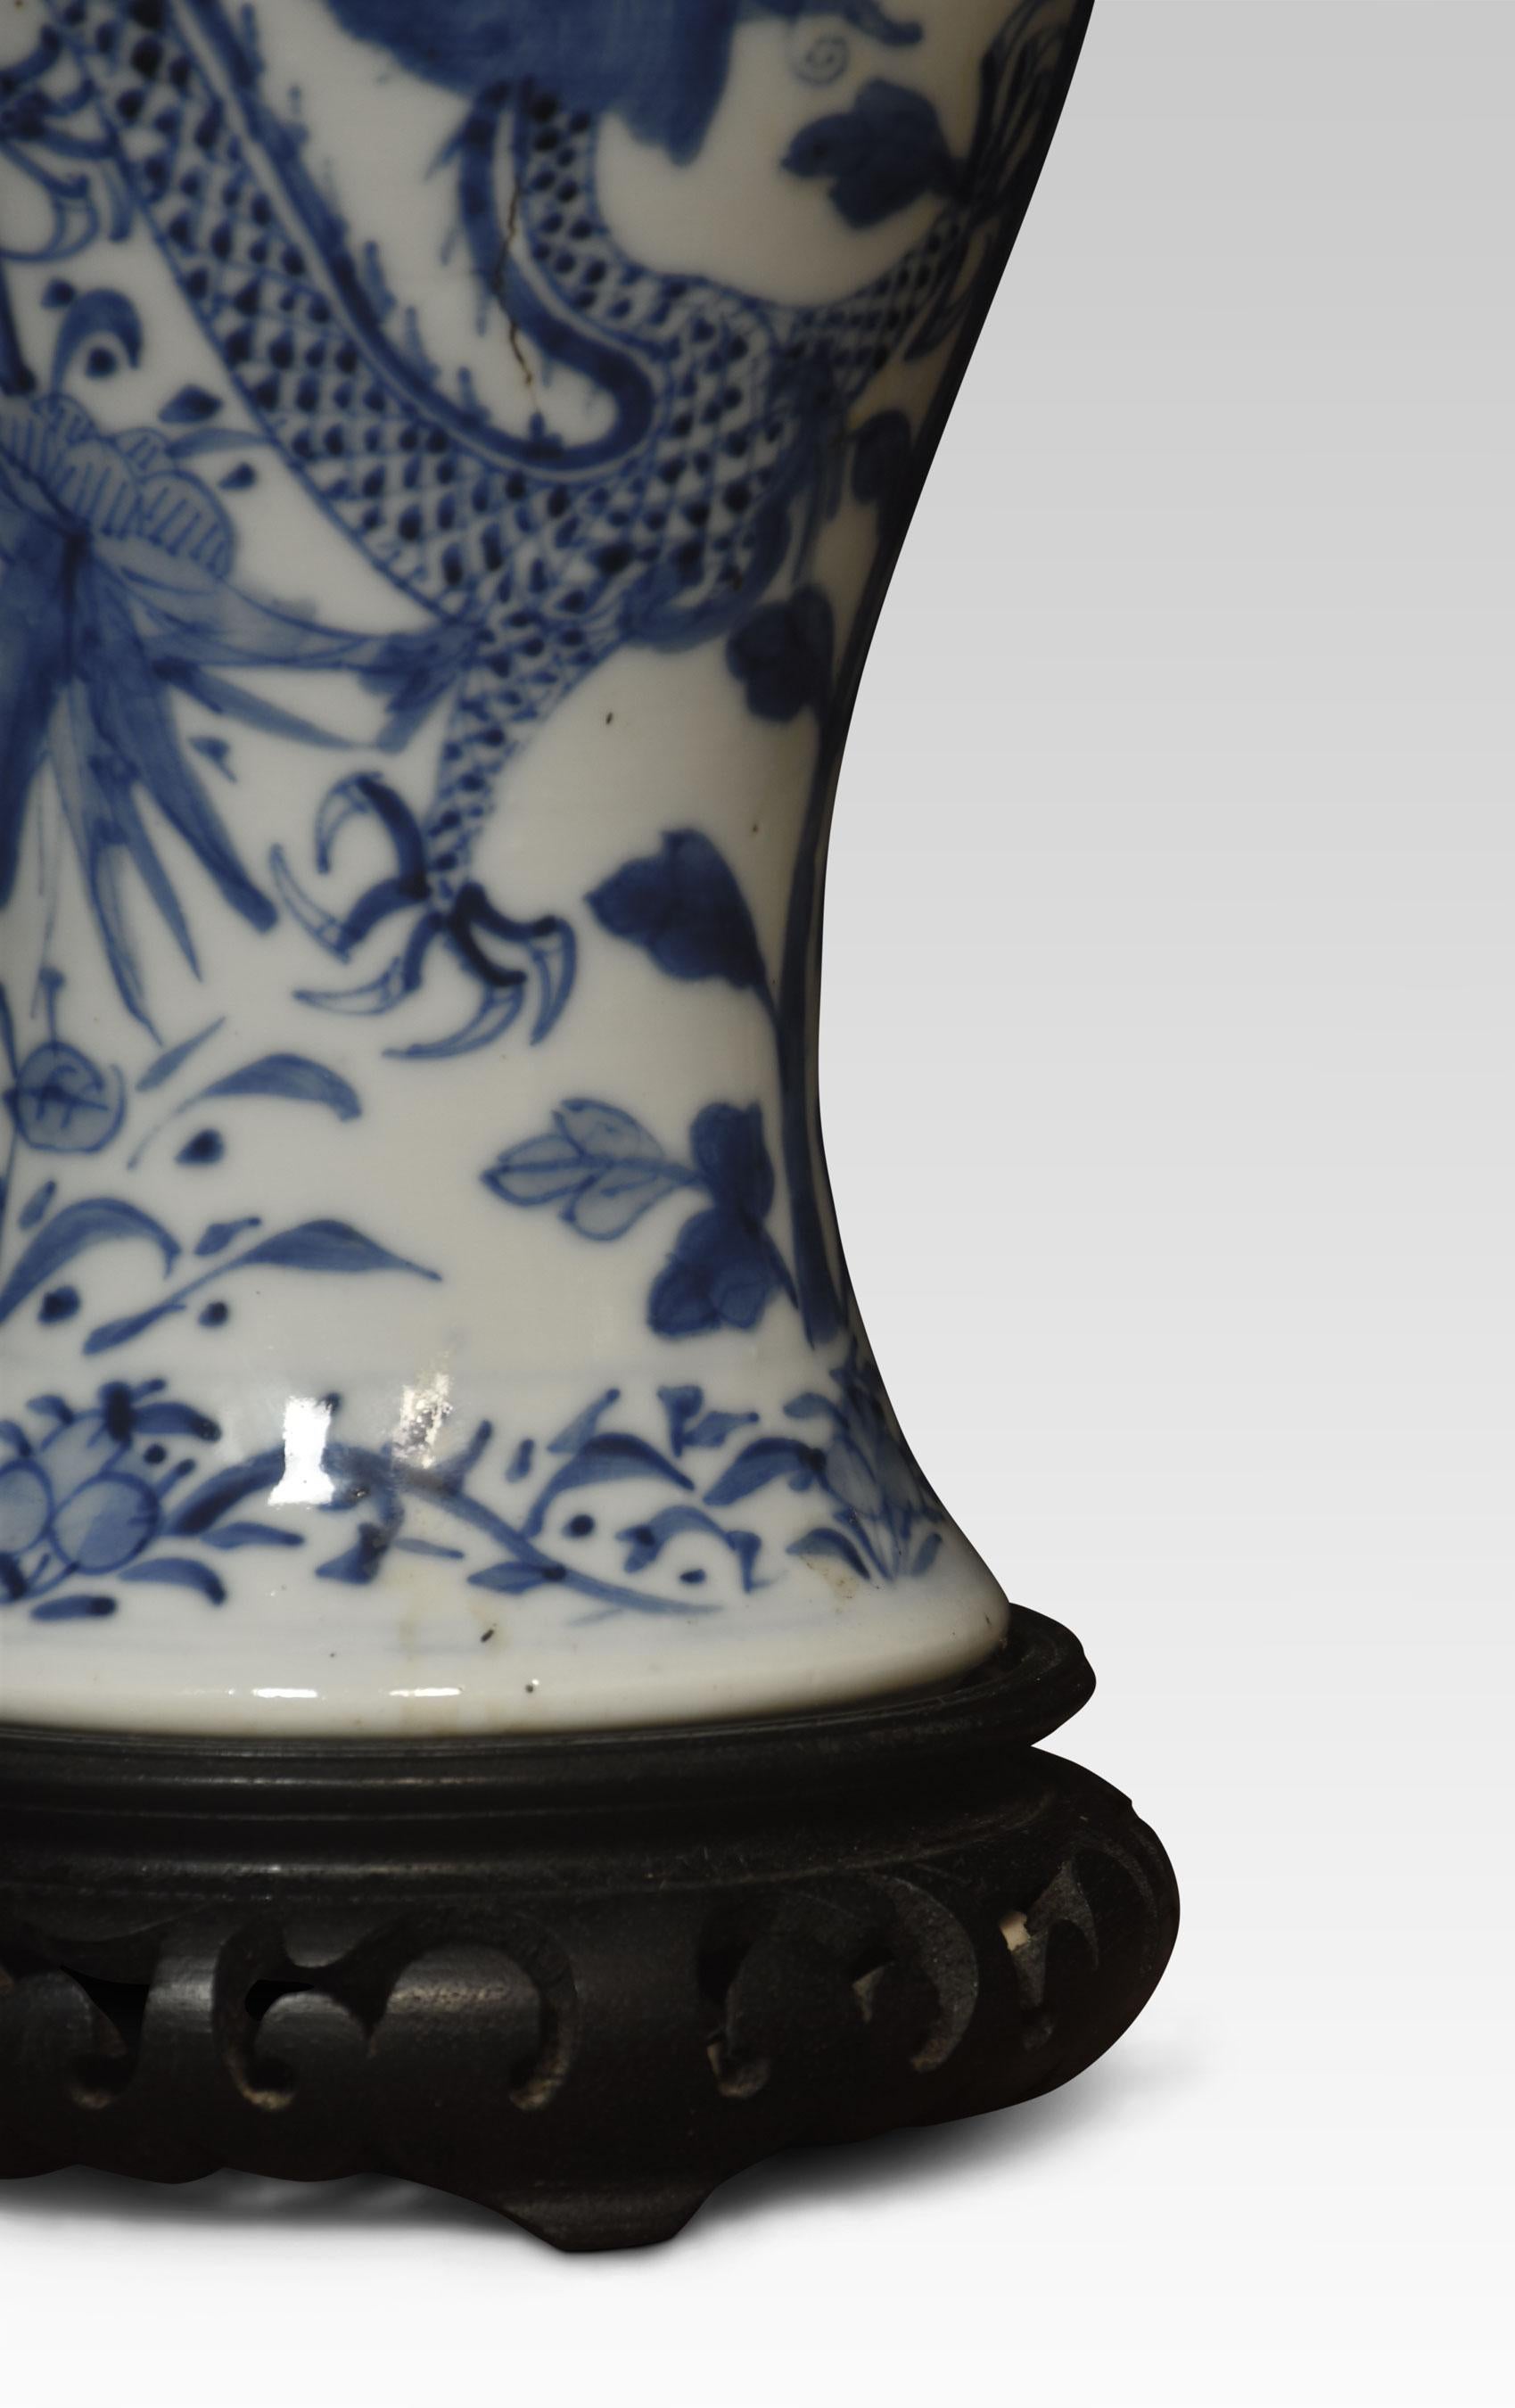 Lampe vase chinoise en bleu et blanc à décor de dragons orientaux et de feuillages sur base percée en ébonite.
Dimensions :
Hauteur 14 pouces
Largeur 5 pouces
Profondeur 5 pouces.